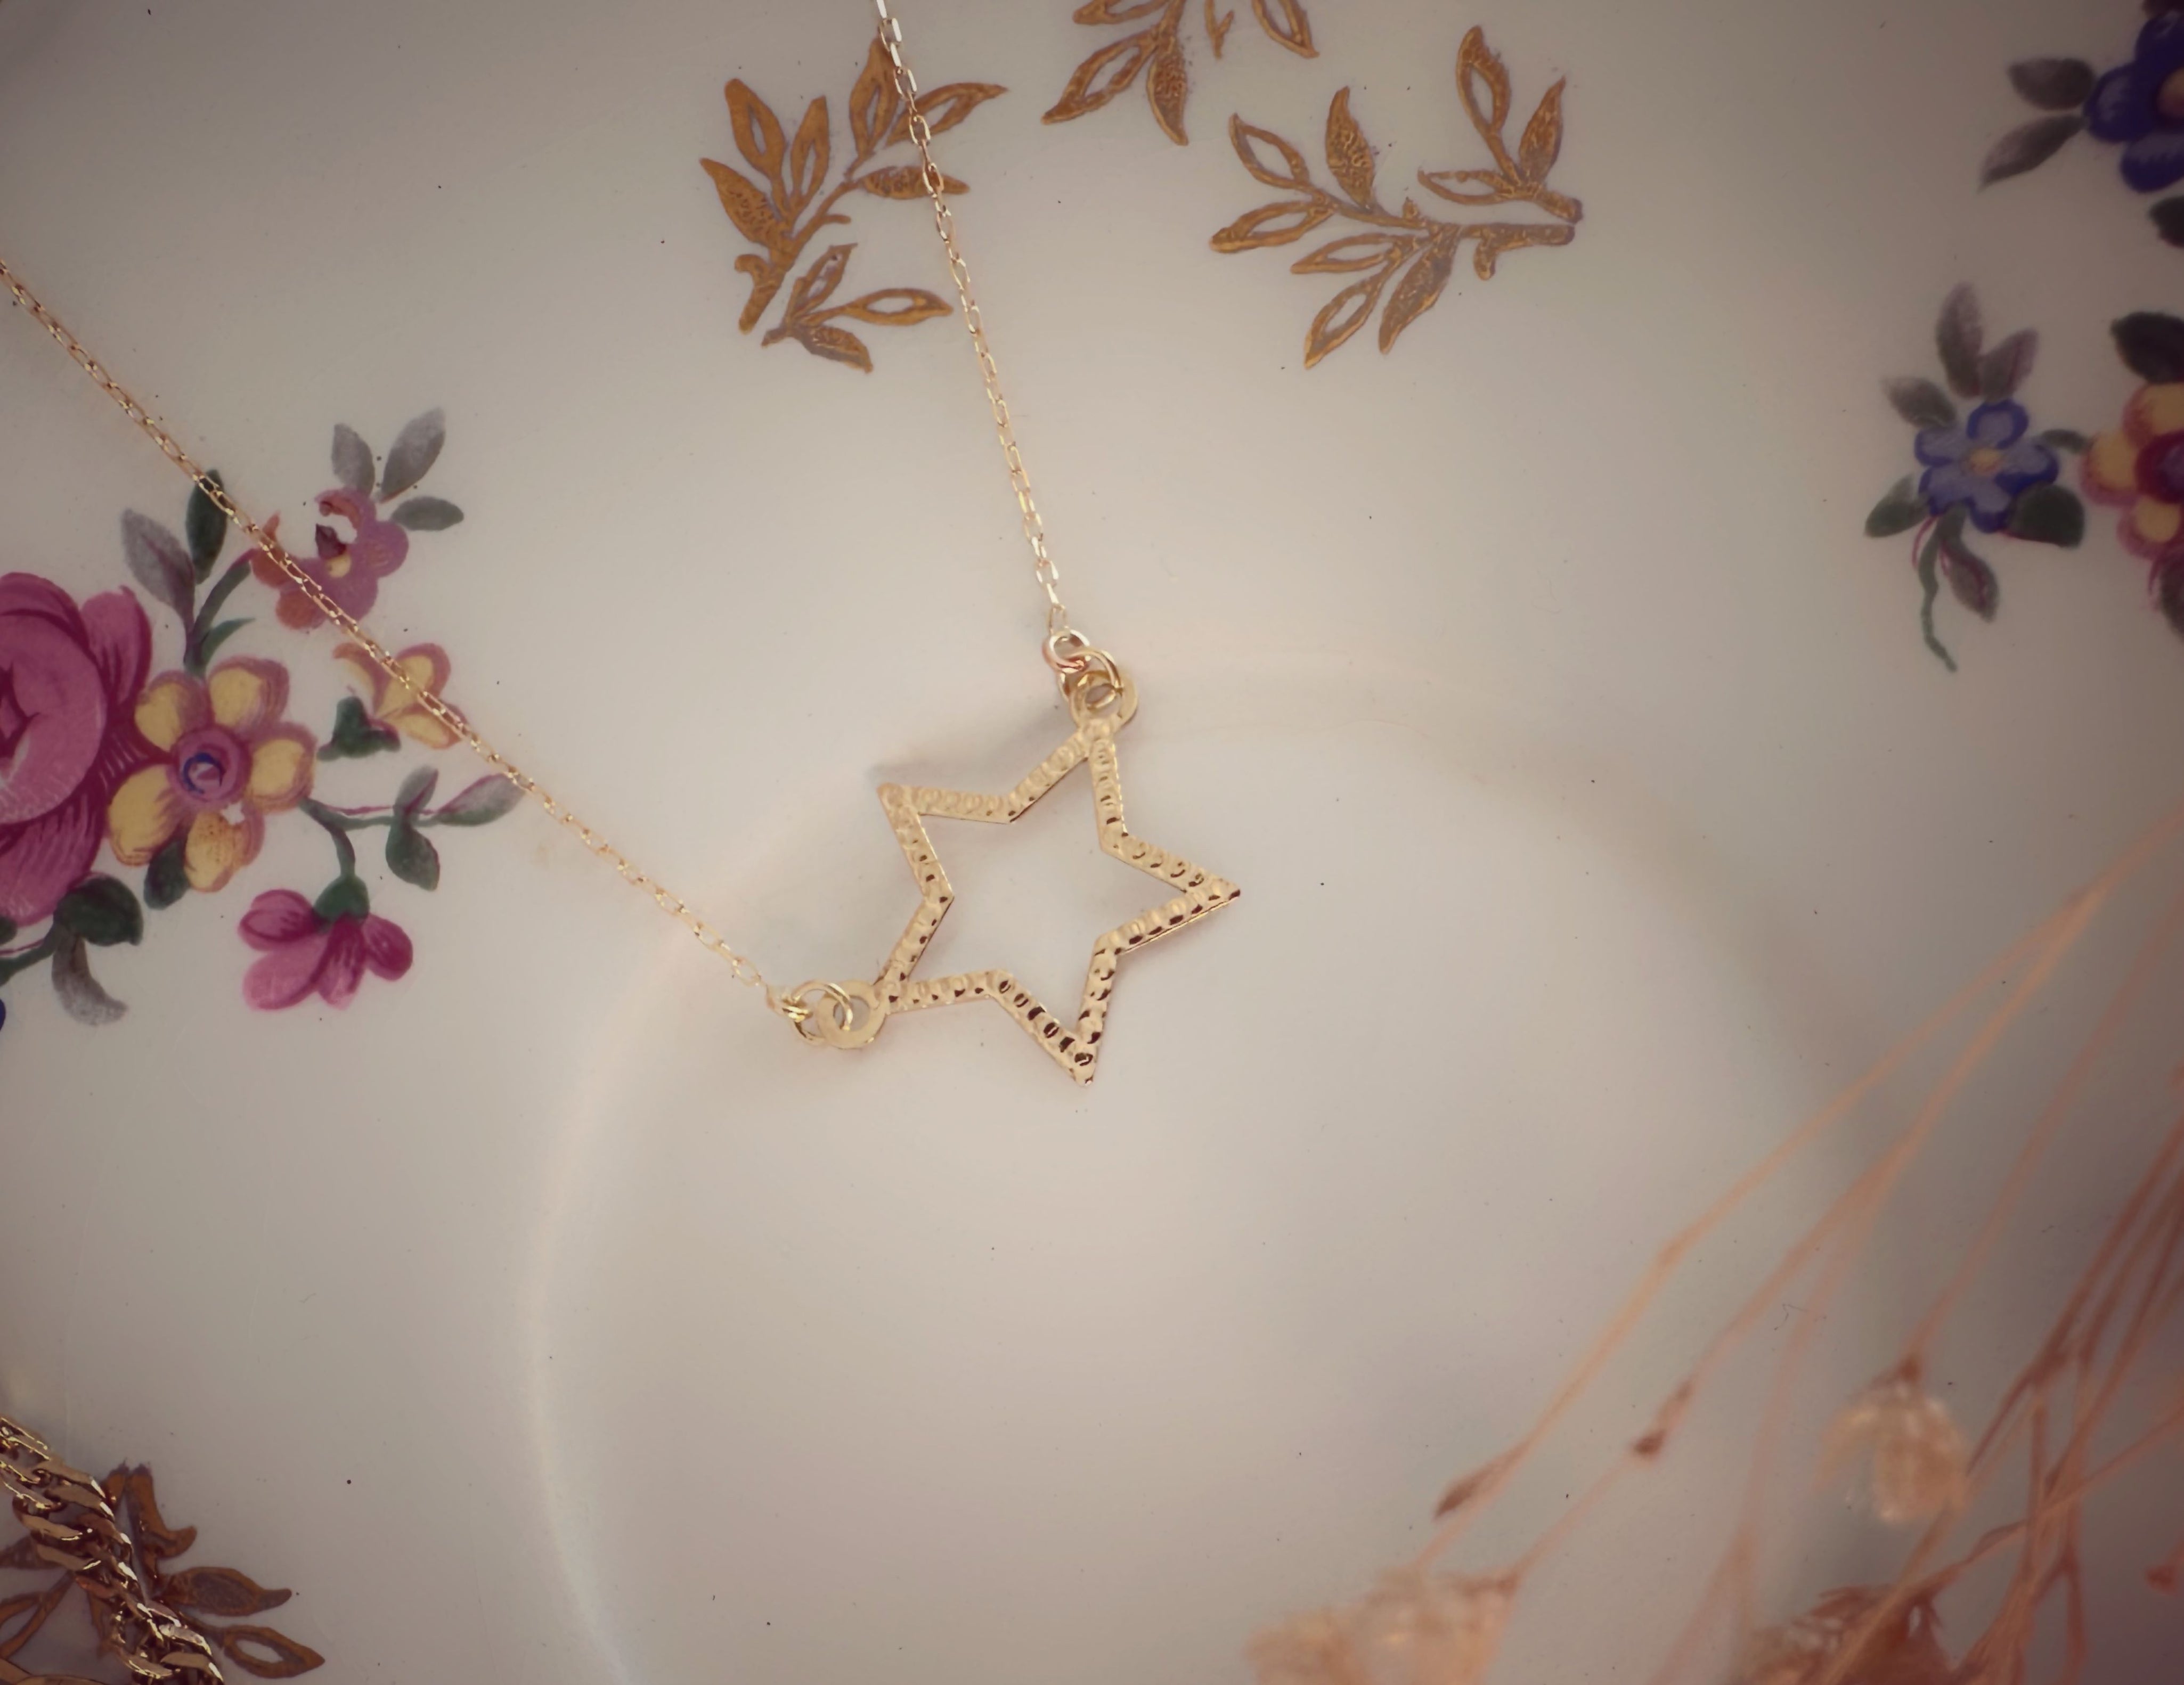 Collier "Pléïade", fine chaîne ajustable et pendentif étoile poinçonnée, en or jaune 18 carats